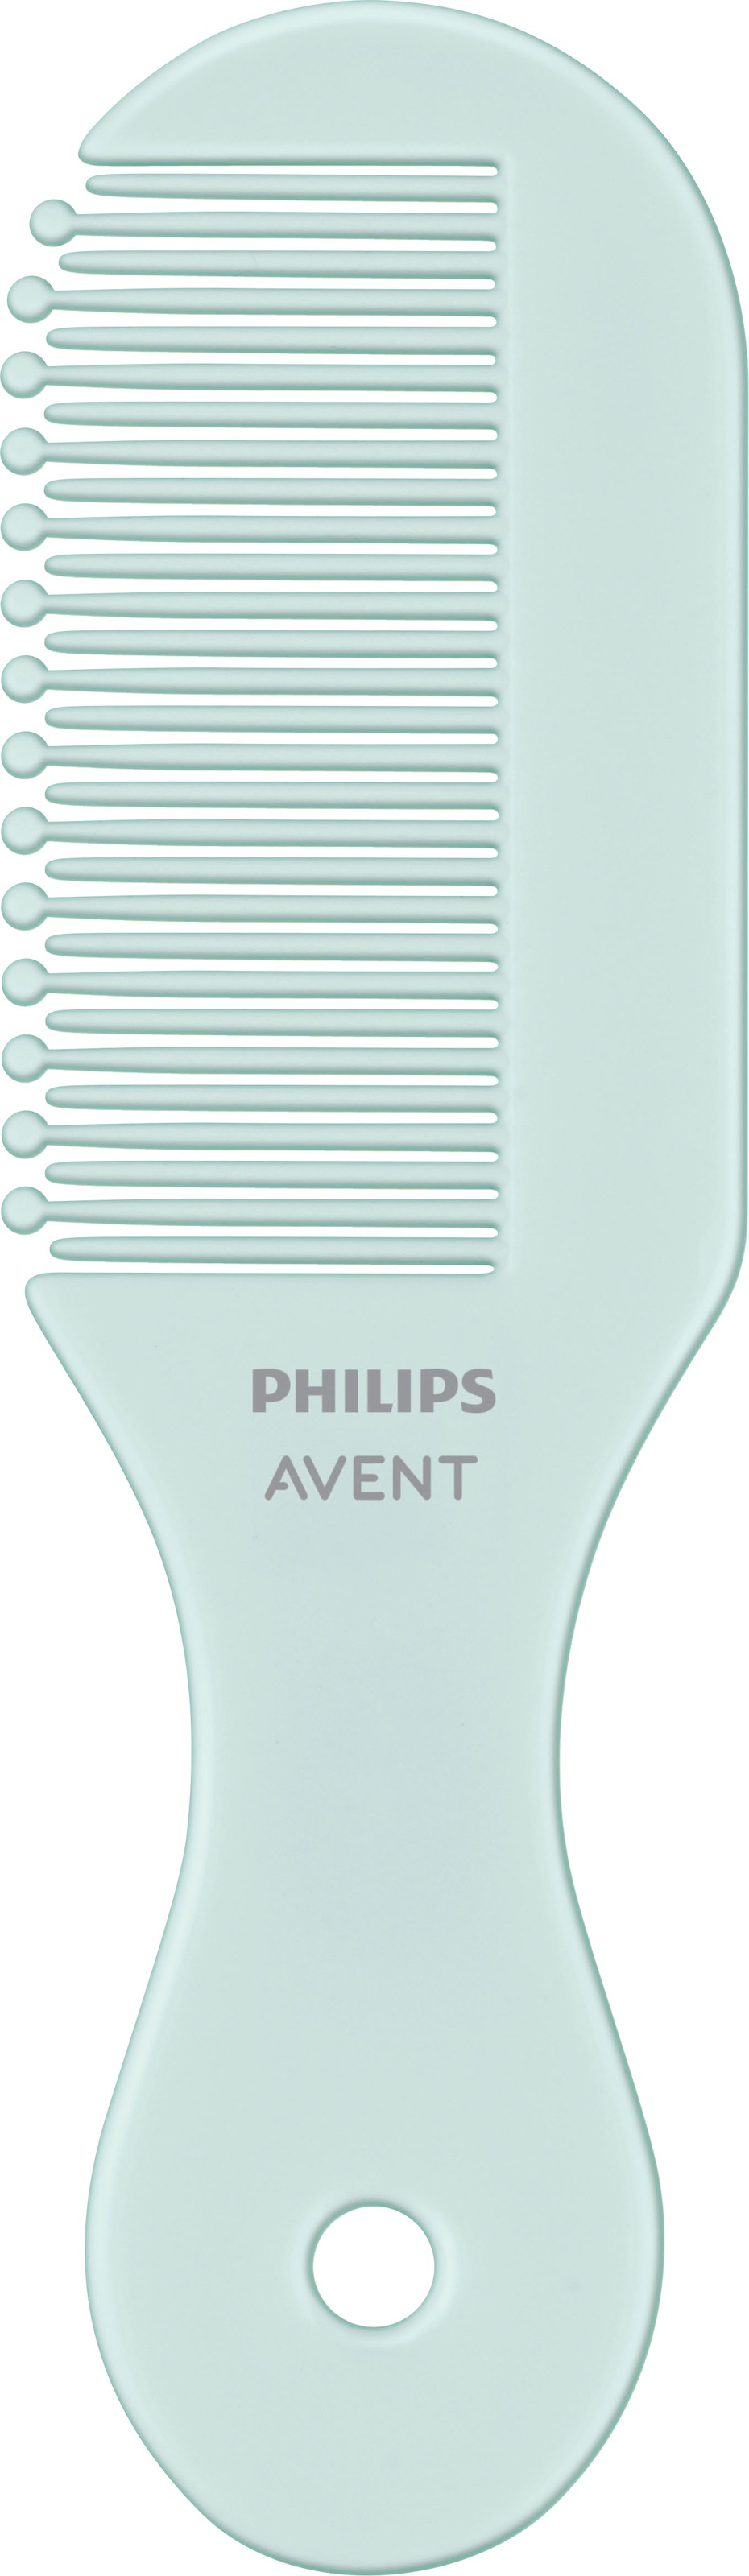 Philips AVENT Babypflege-Set »SCH401/00«, mit allen wichtigen für die Babypflege